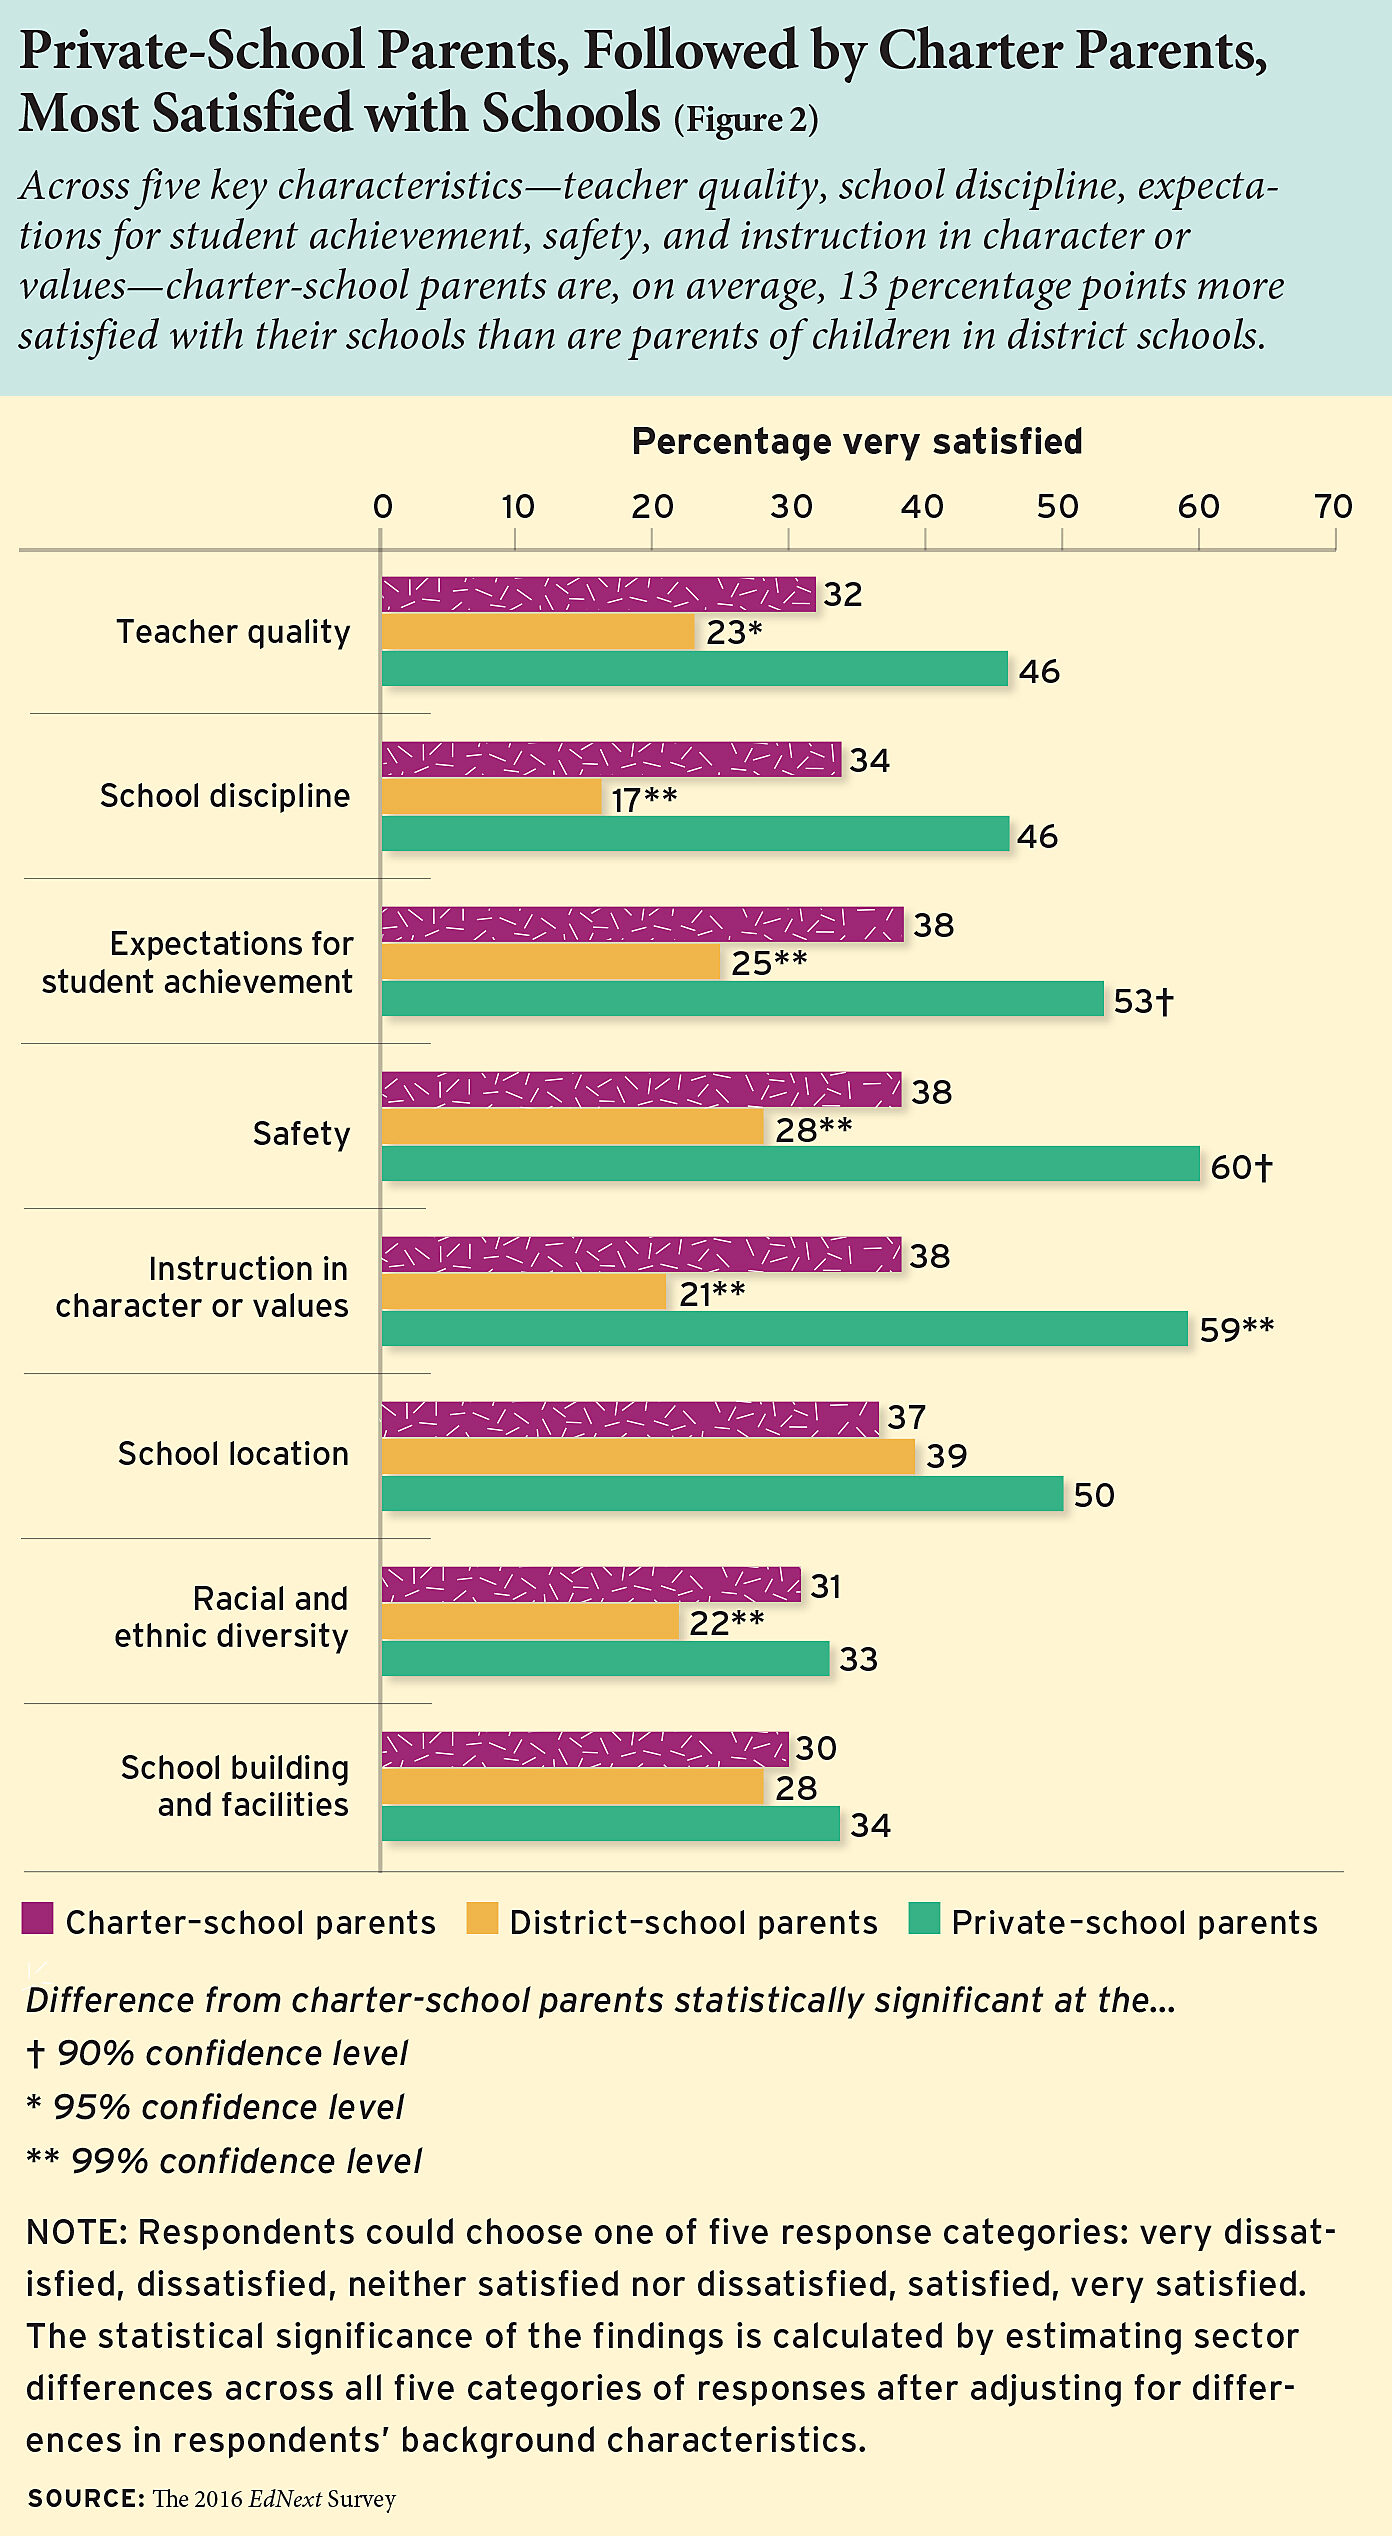 Parental satisfaction across schooling sectors